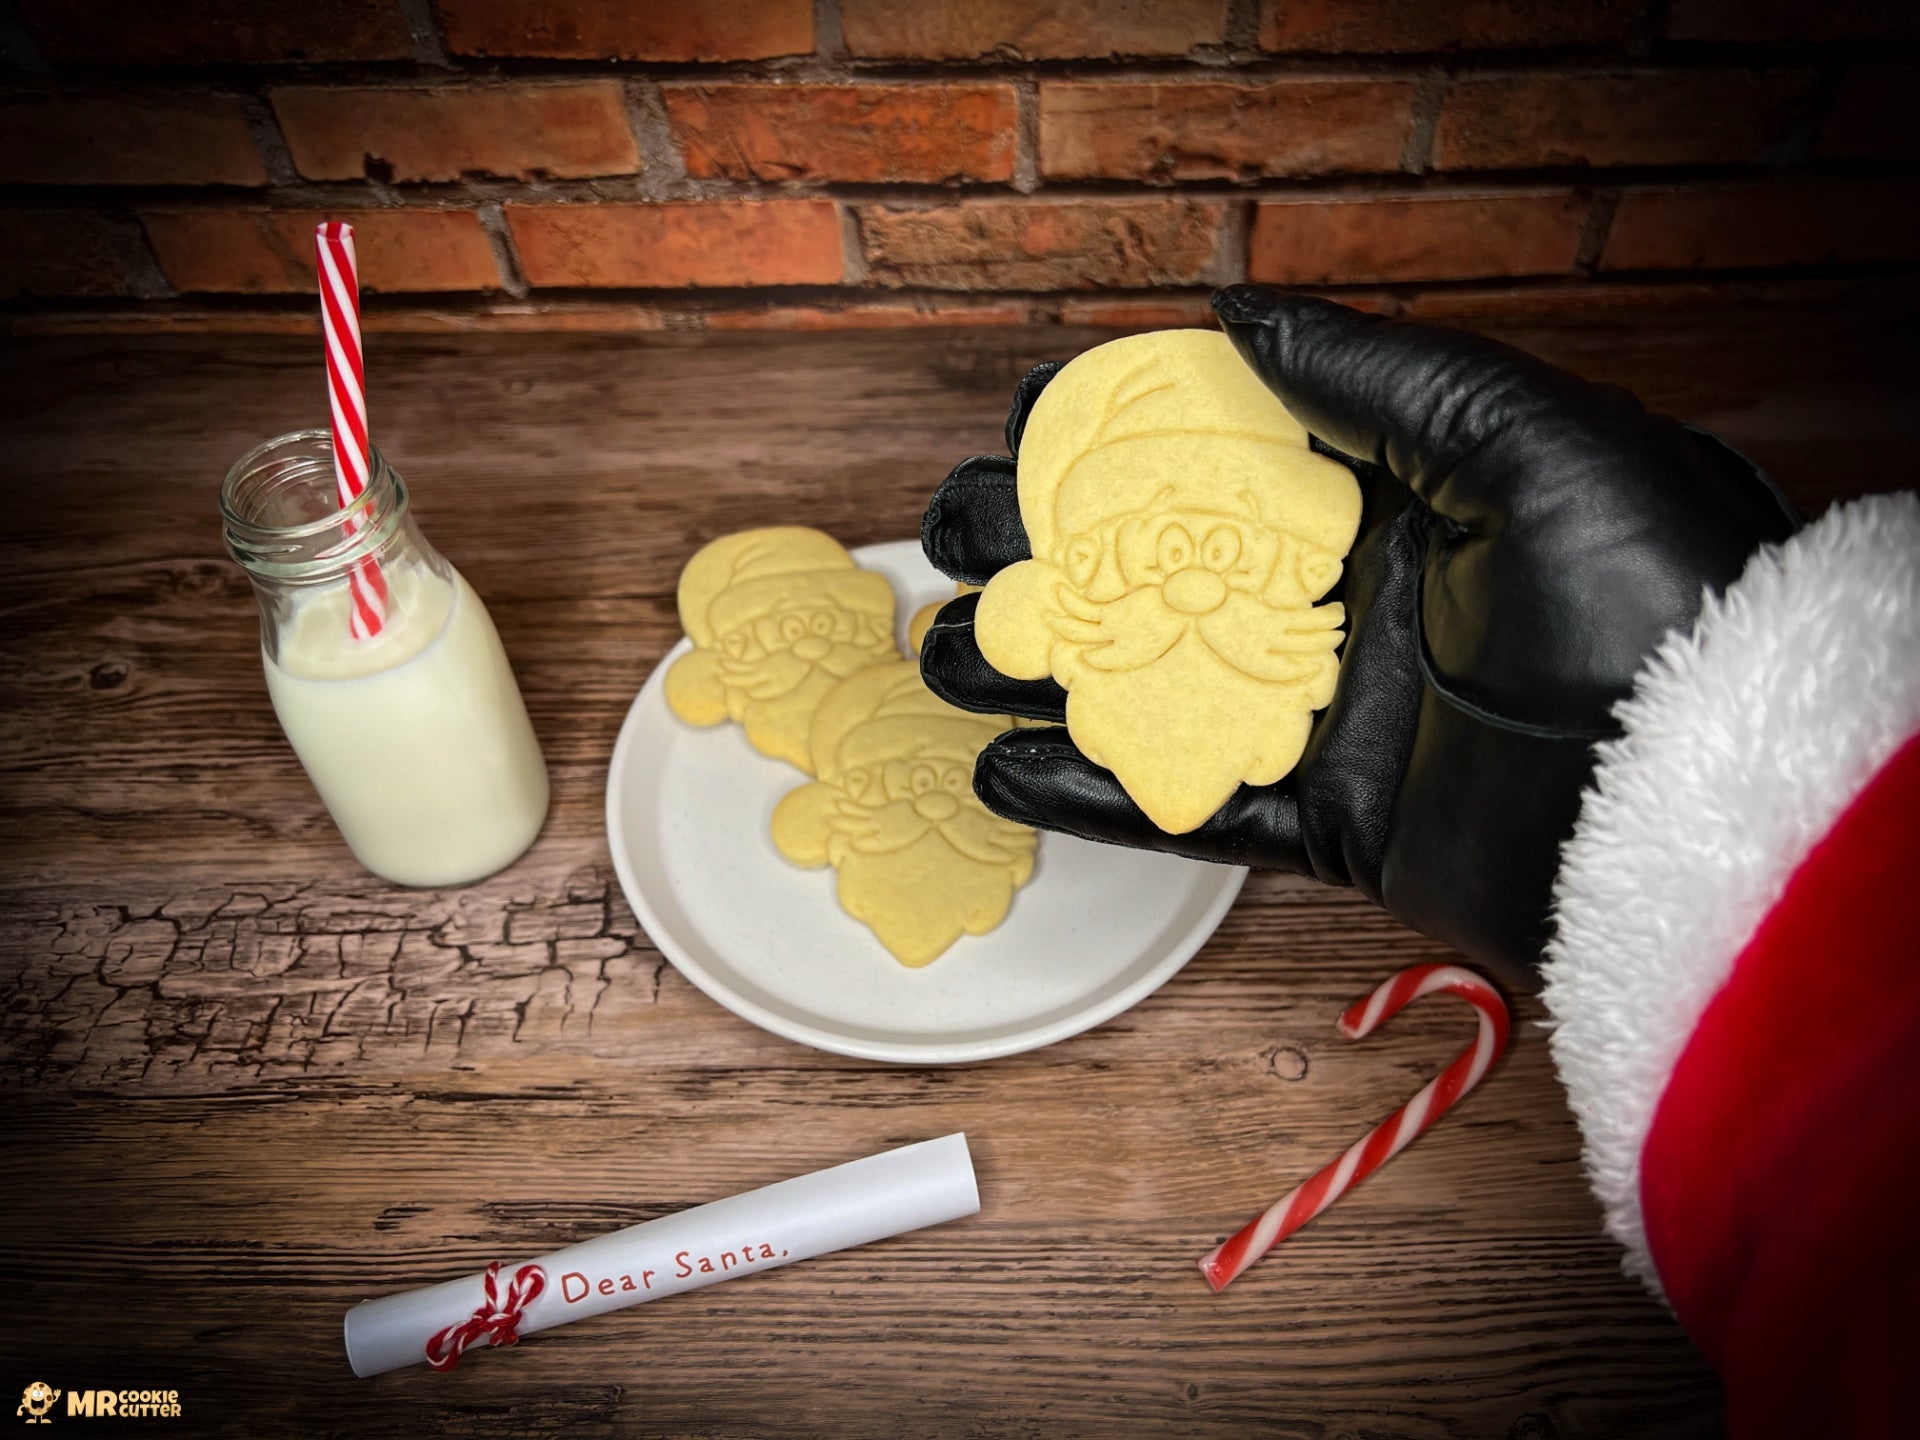 Santa Claus holding a Santa cookie